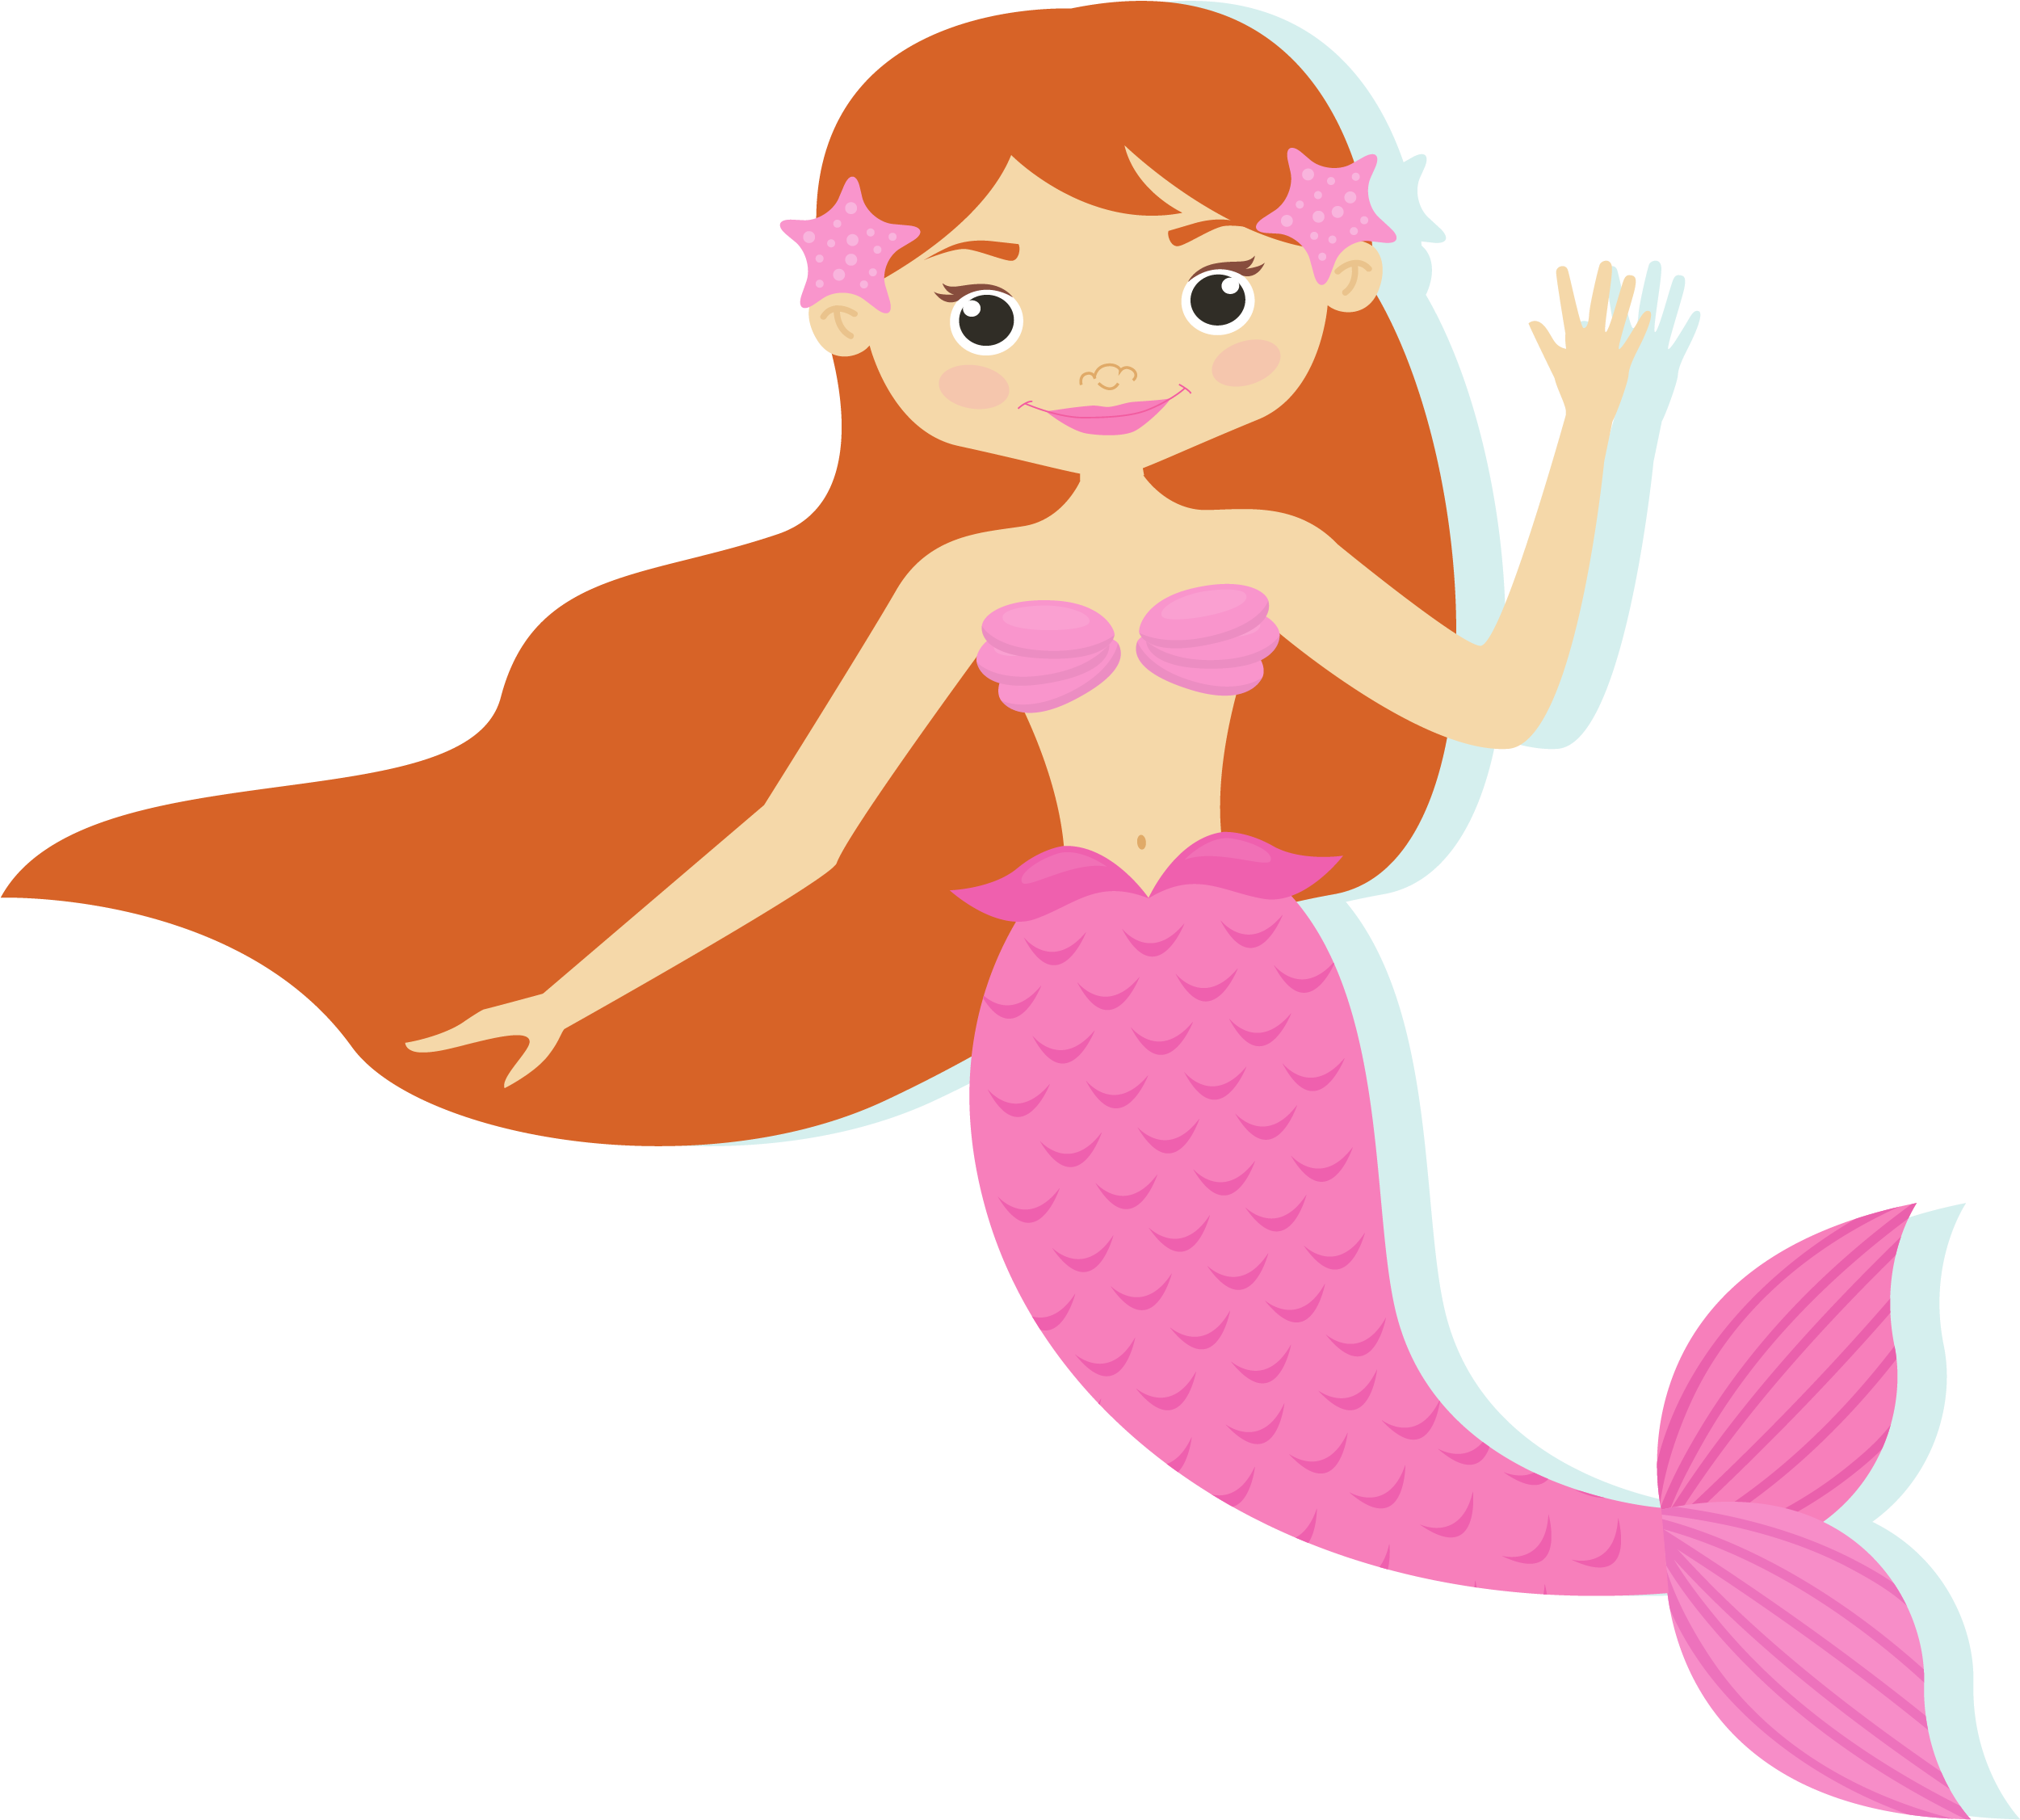 Mermaid Cartoon Illustration - Transparent Background Mermaid Cartoon Transparent, Hd Png Download